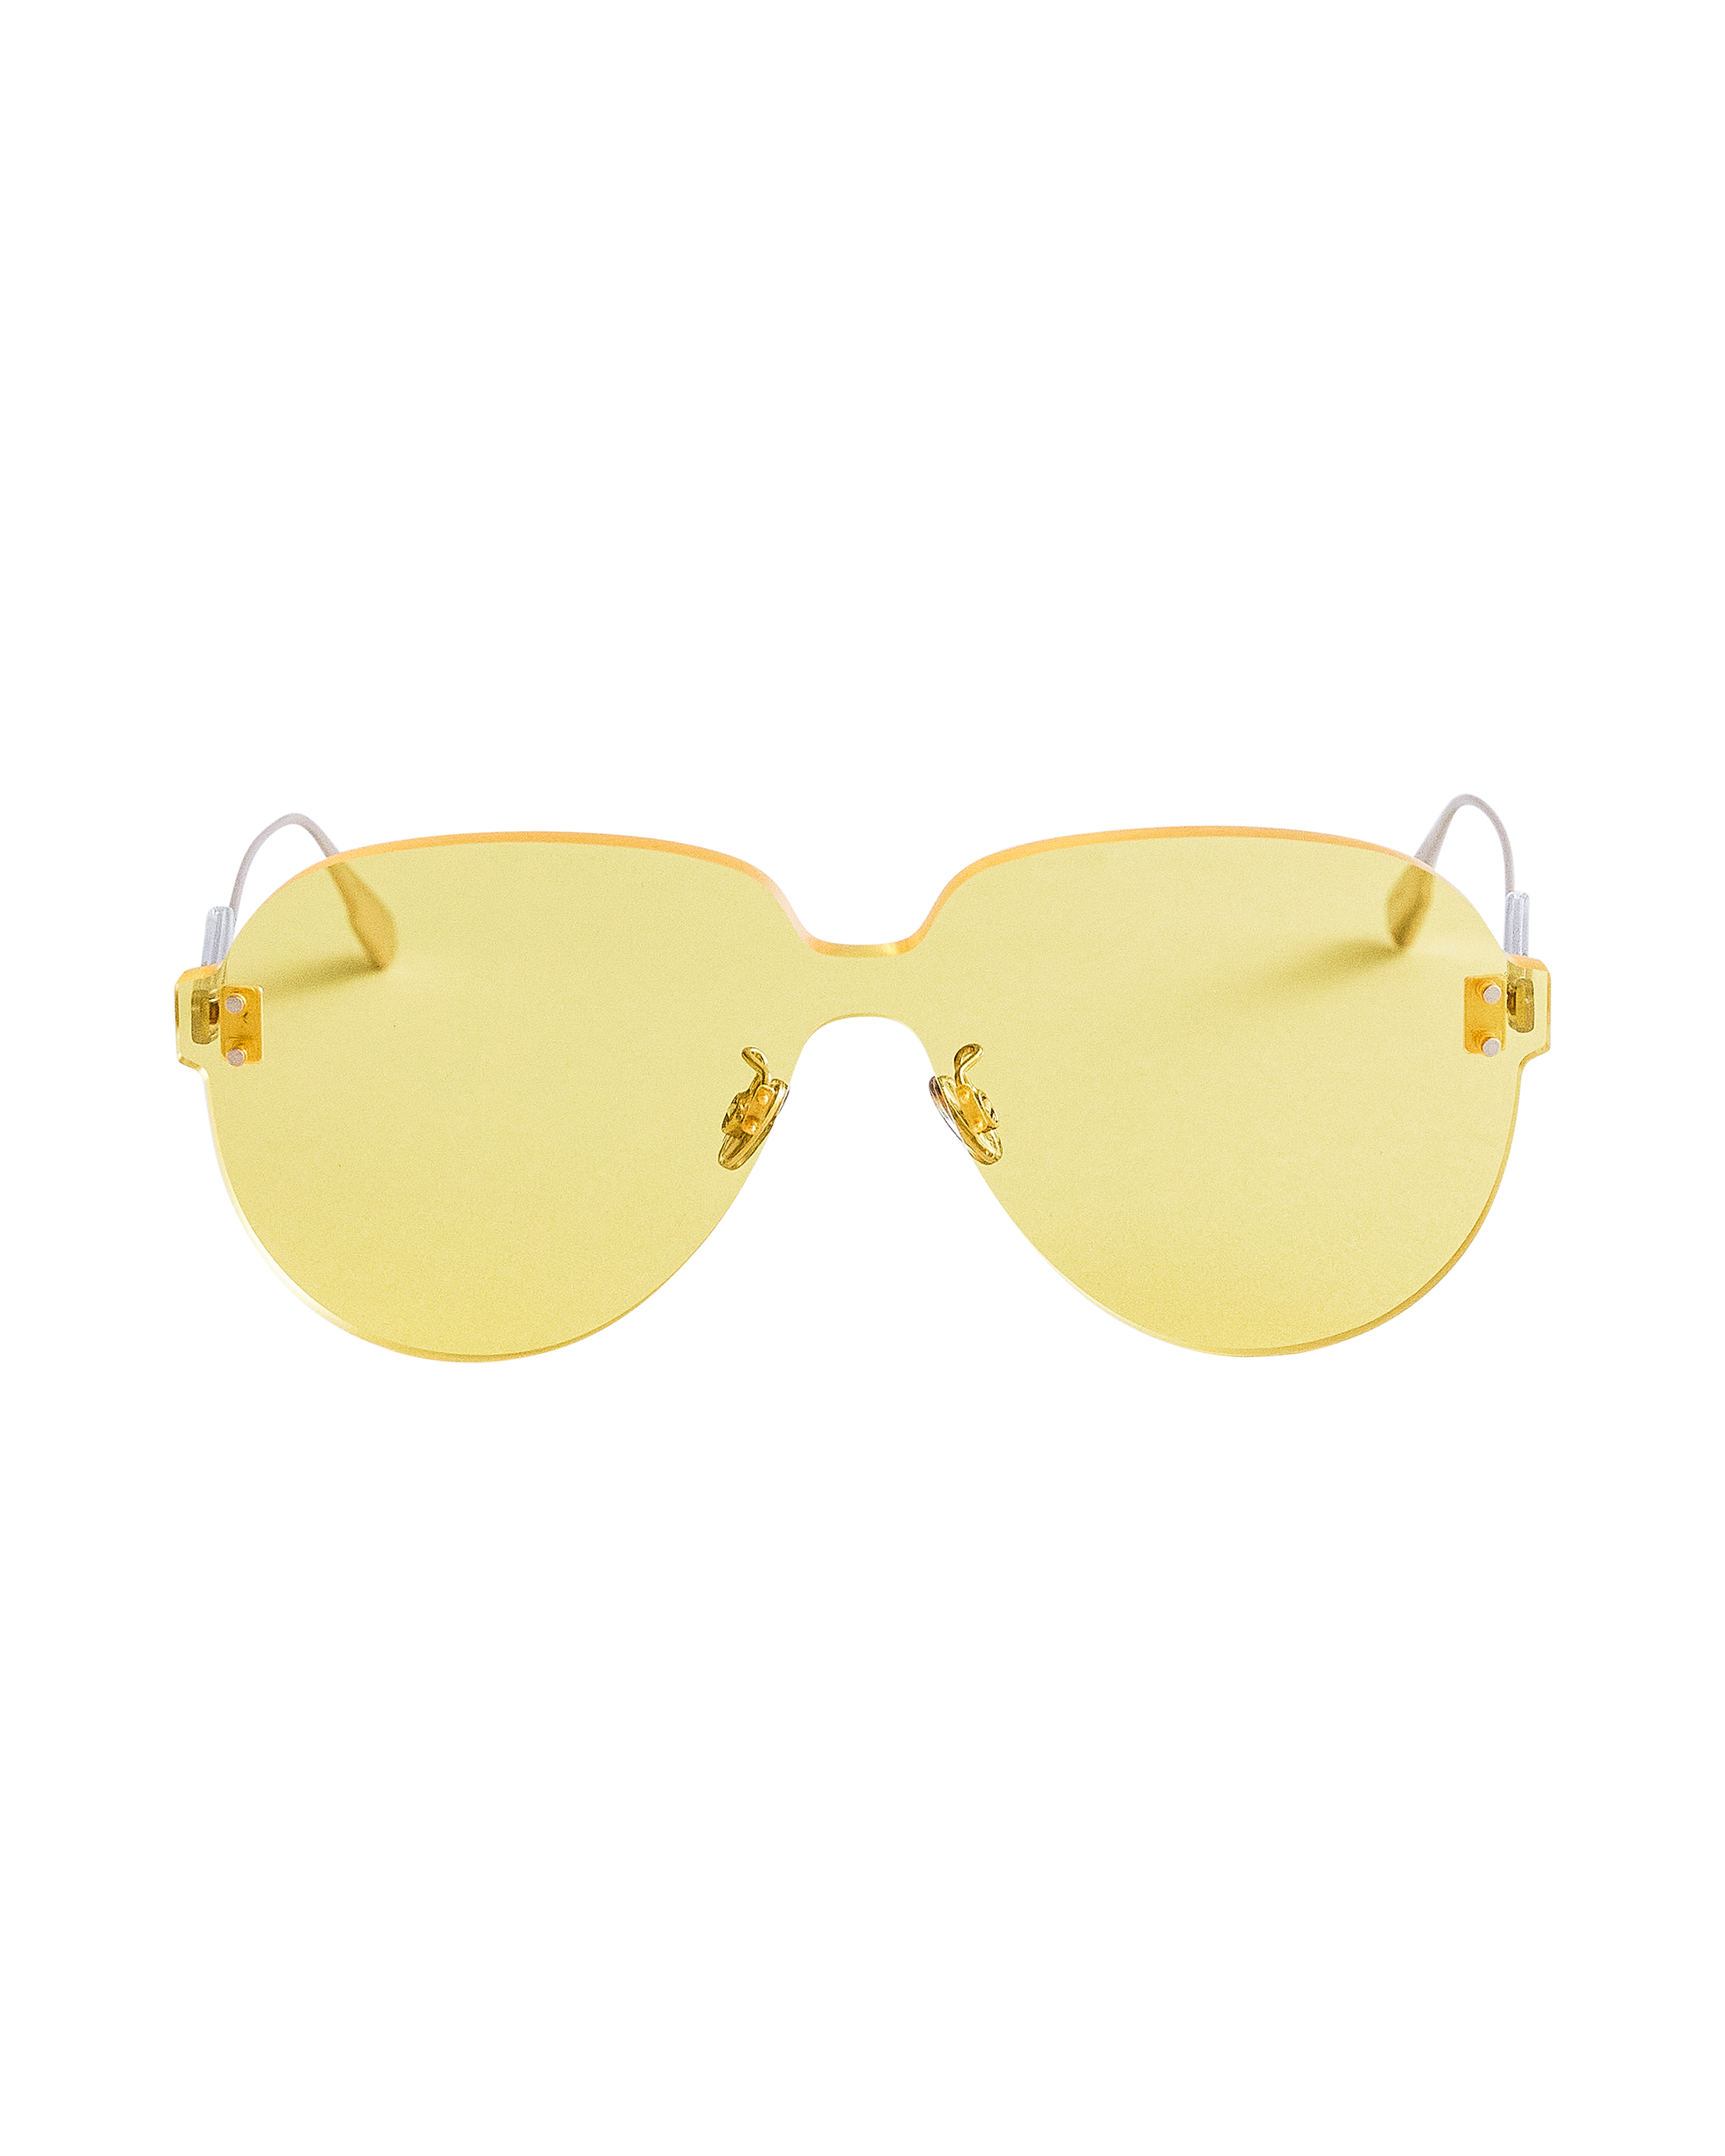 A/W 2018 'Color Quake 3' Yellow Shield Sunglasses